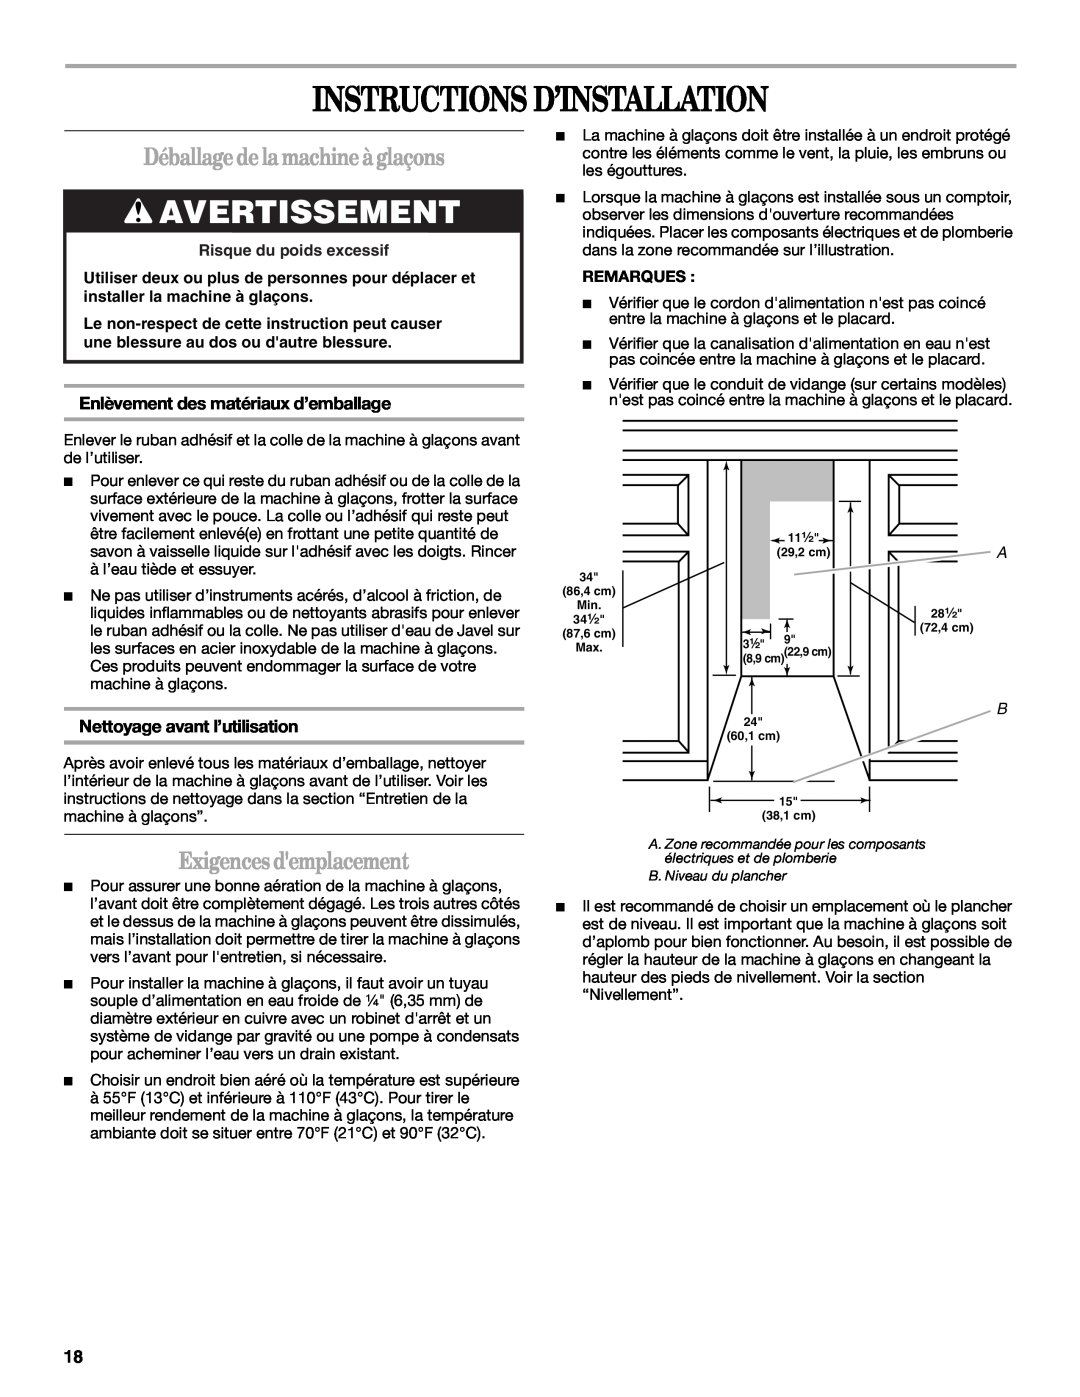 Whirlpool W10206421B Instructions D’Installation, Avertissement, Déballage de la machine à glaçons, Exigences demplacement 